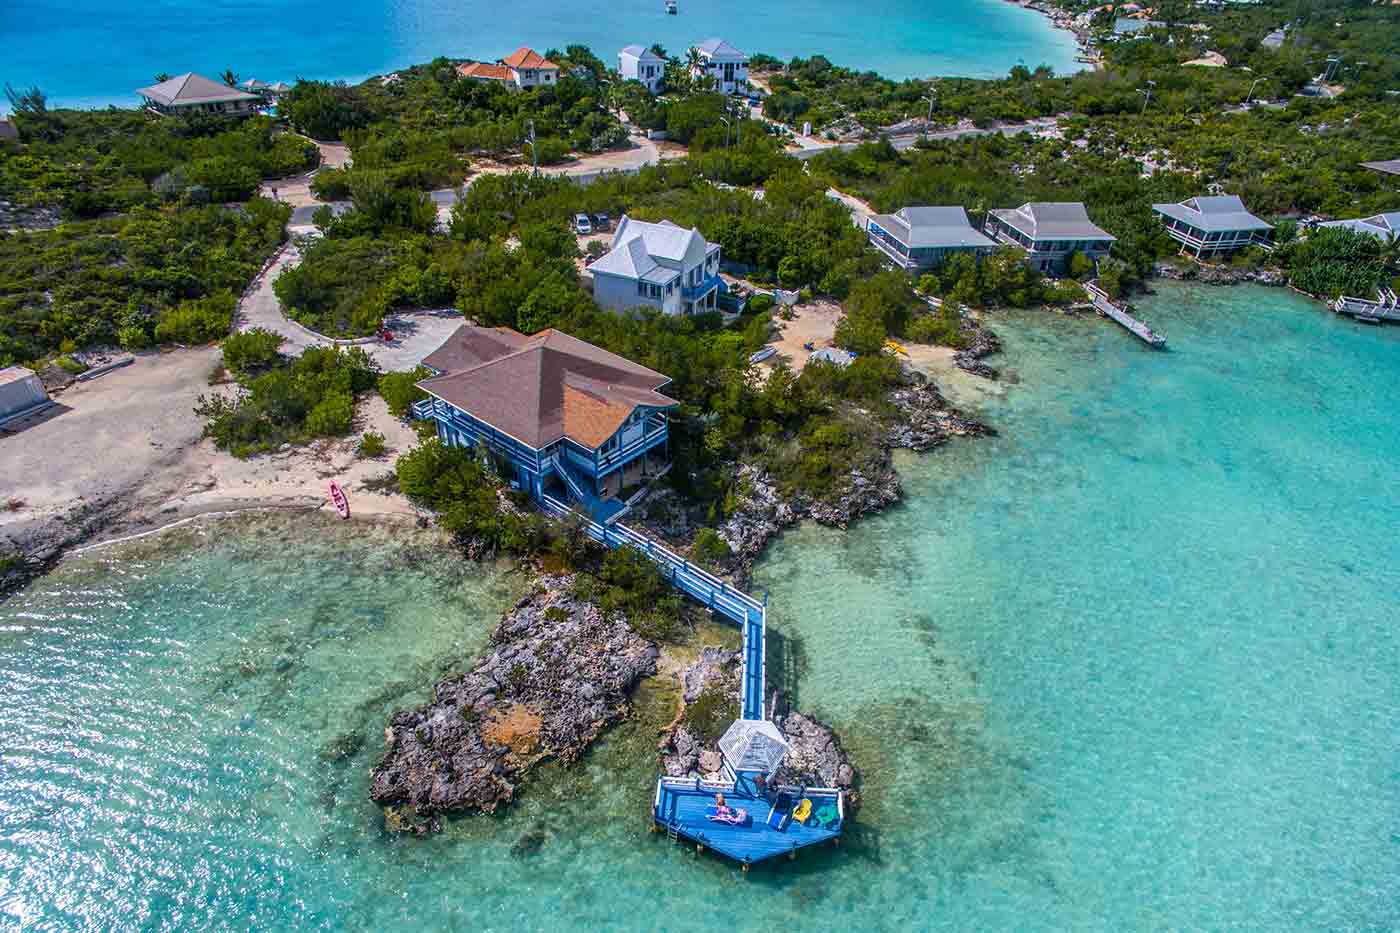 Luxury beach houses on tropical islands